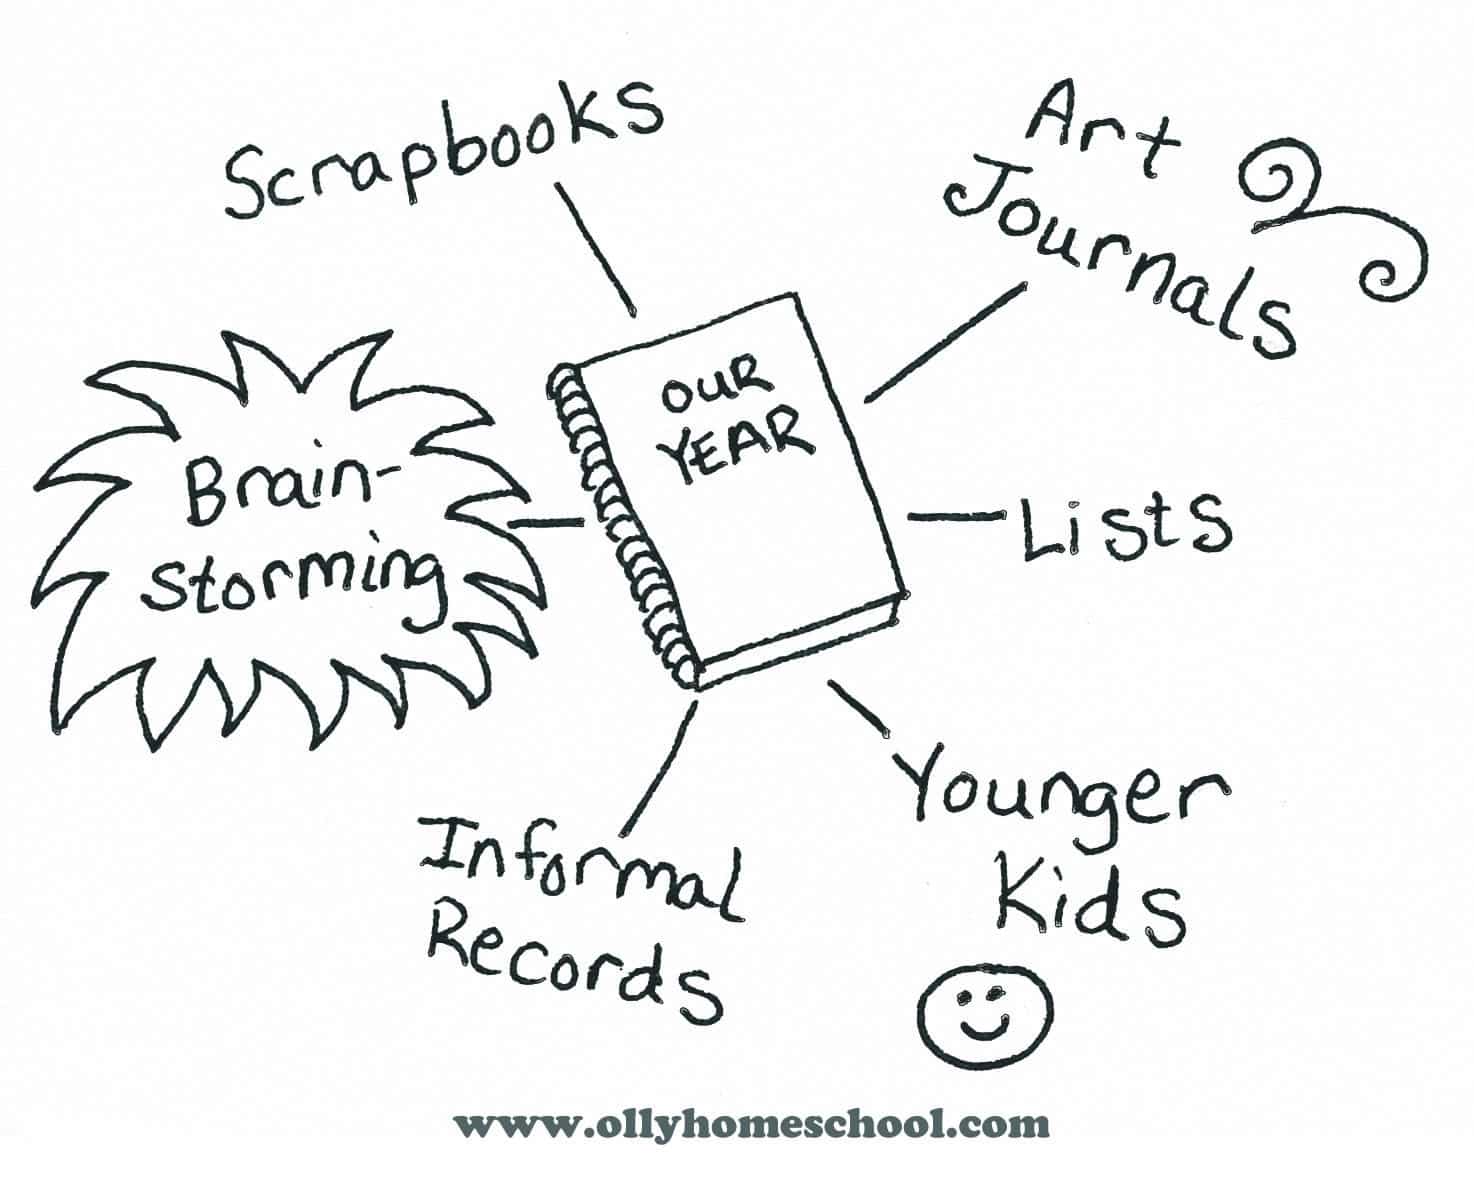 Homeschool Planning: Paper vs. Digital